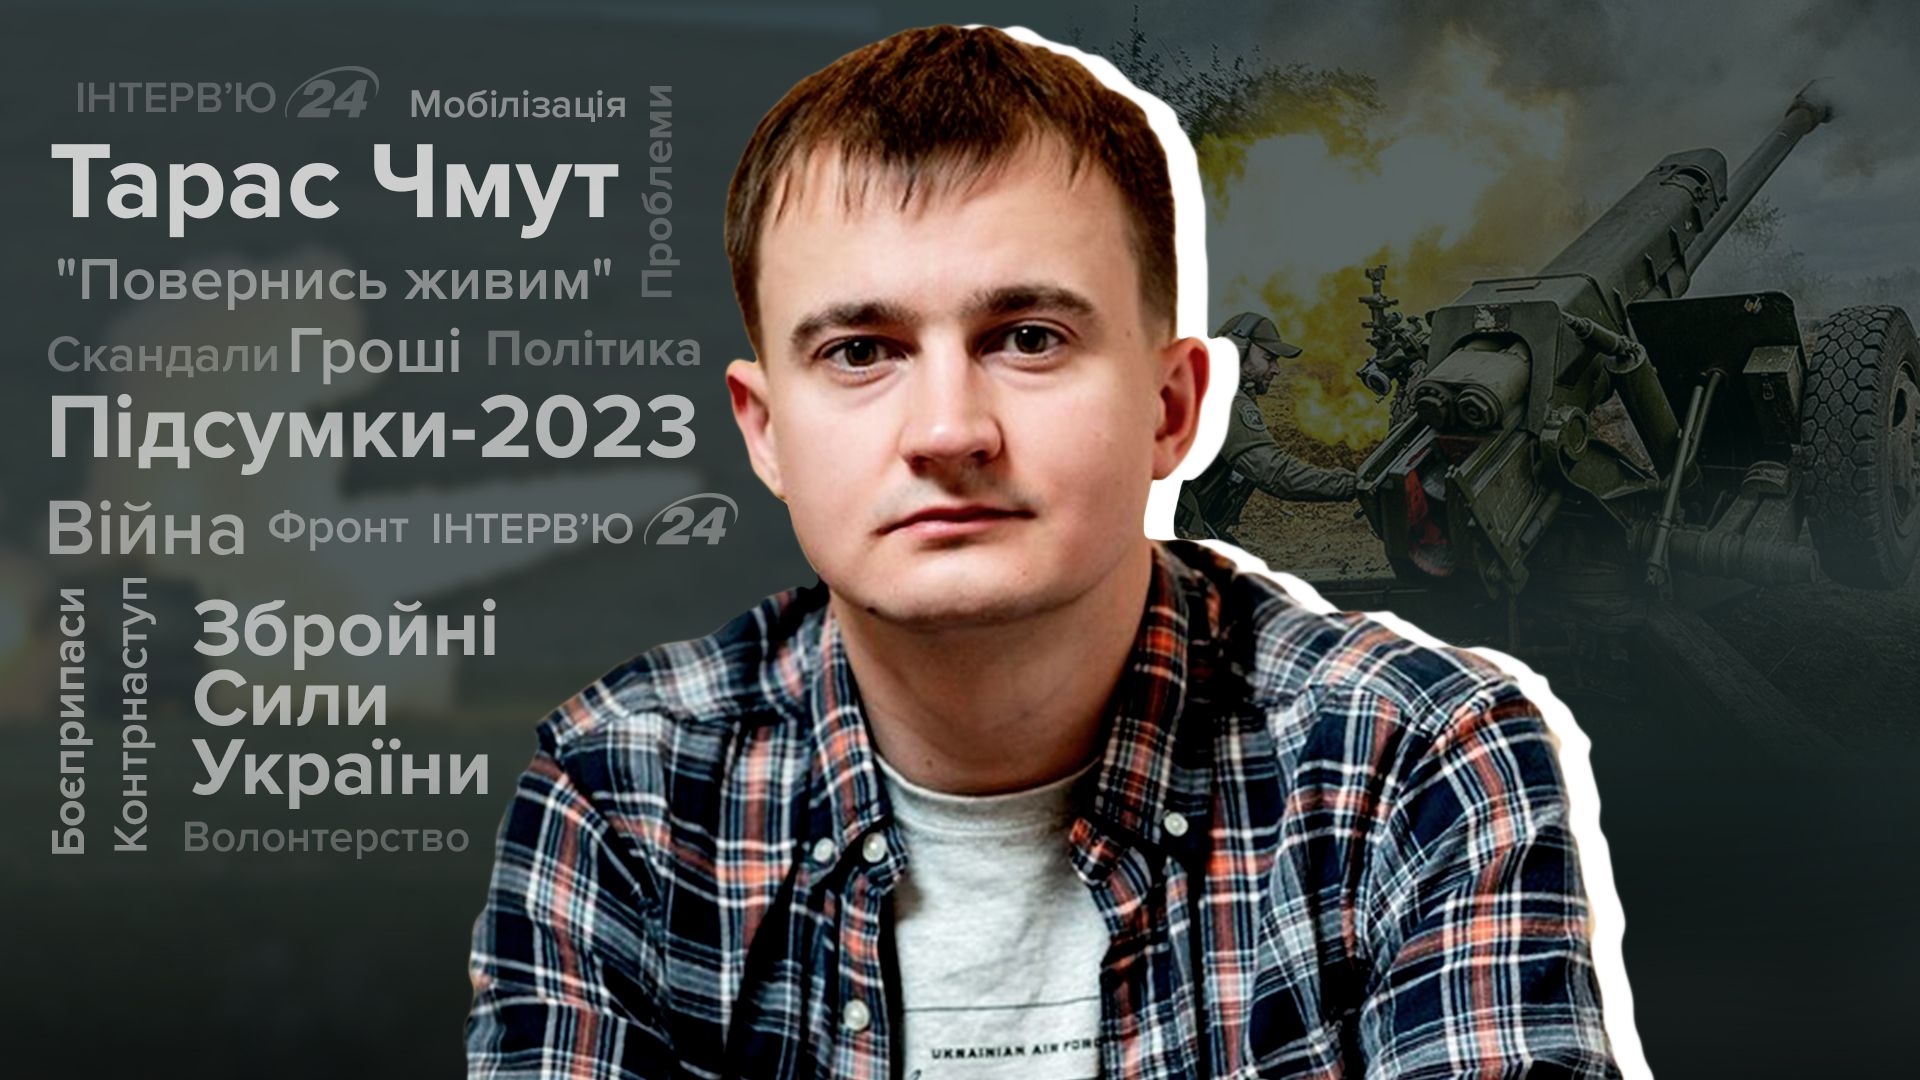 Итоги 2023 года - Тарас Чмут о контрнаступлении, коррупции, мобилизации - Новости Украины - 24 Канал